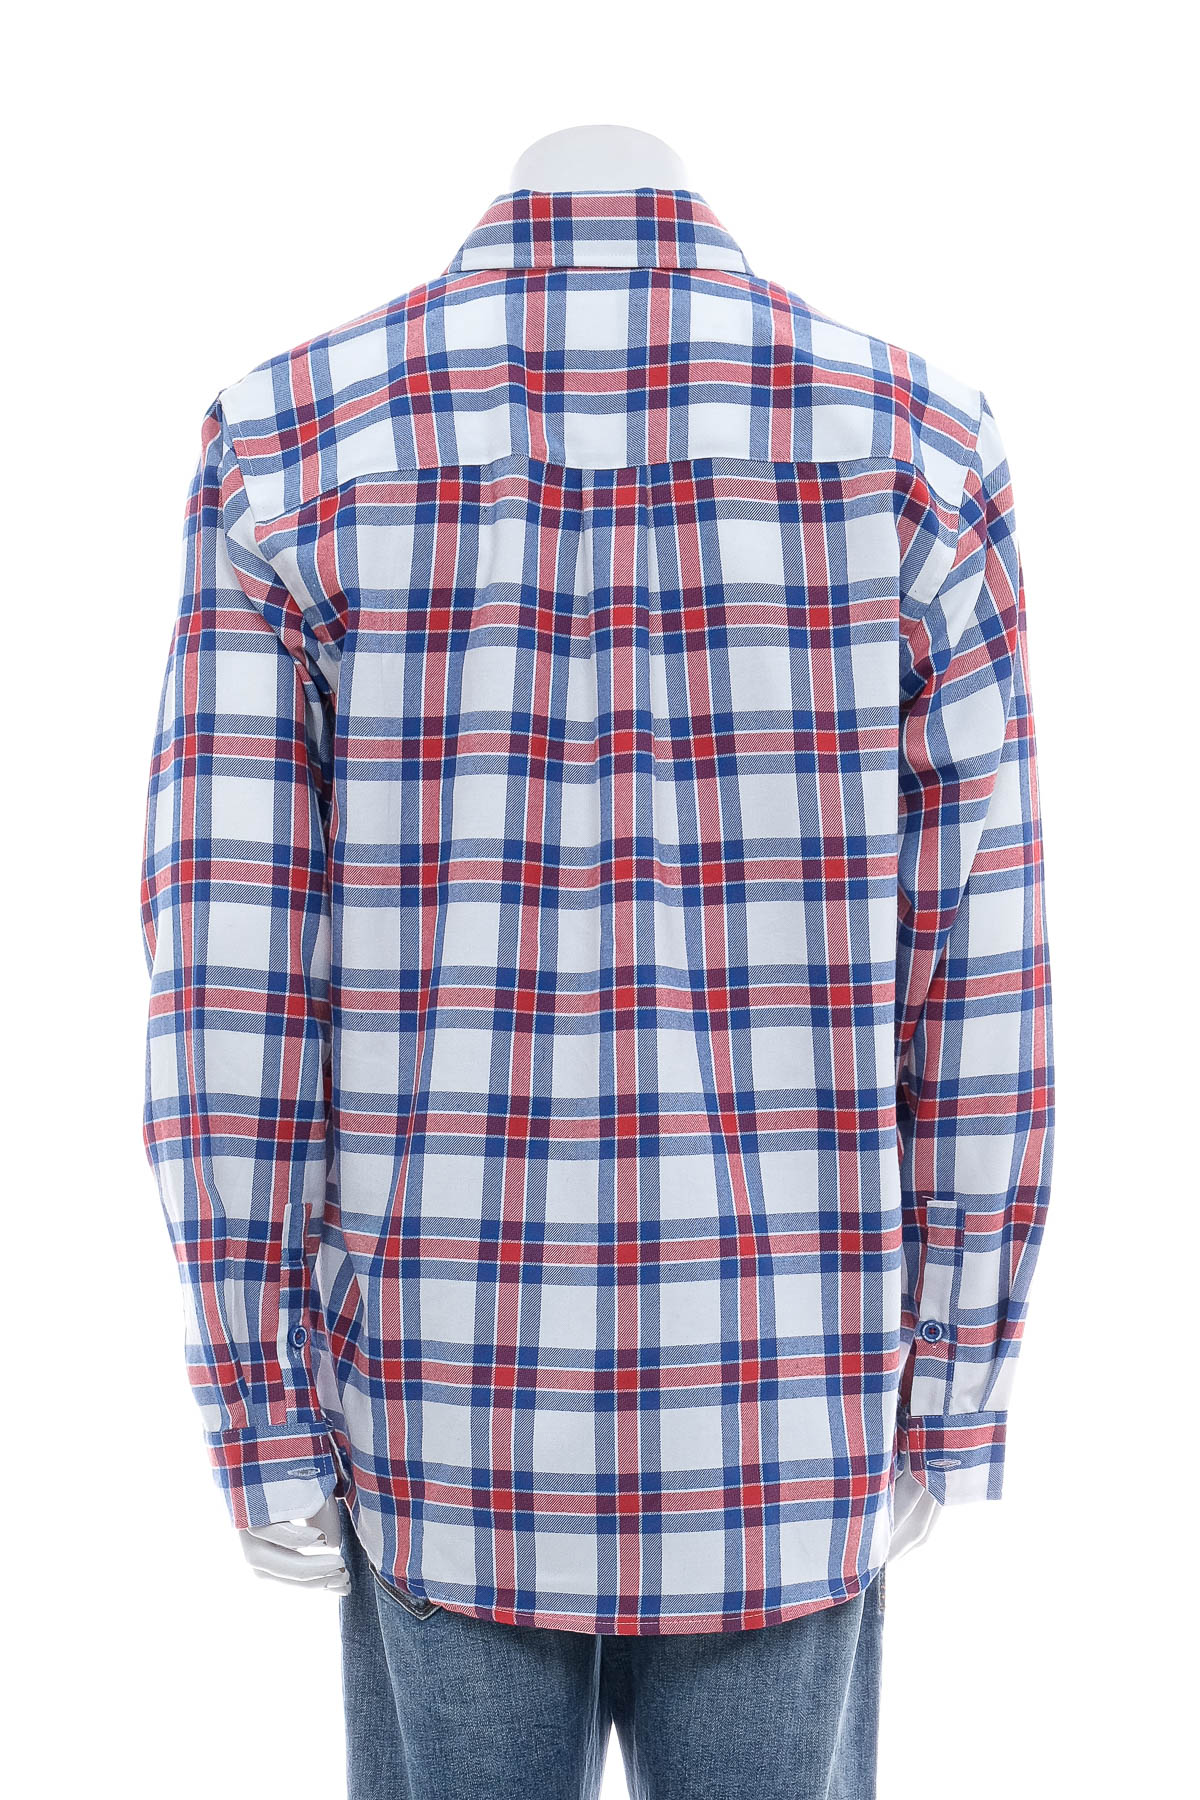 Men's shirt - Dixxon Flannel Co. - 1